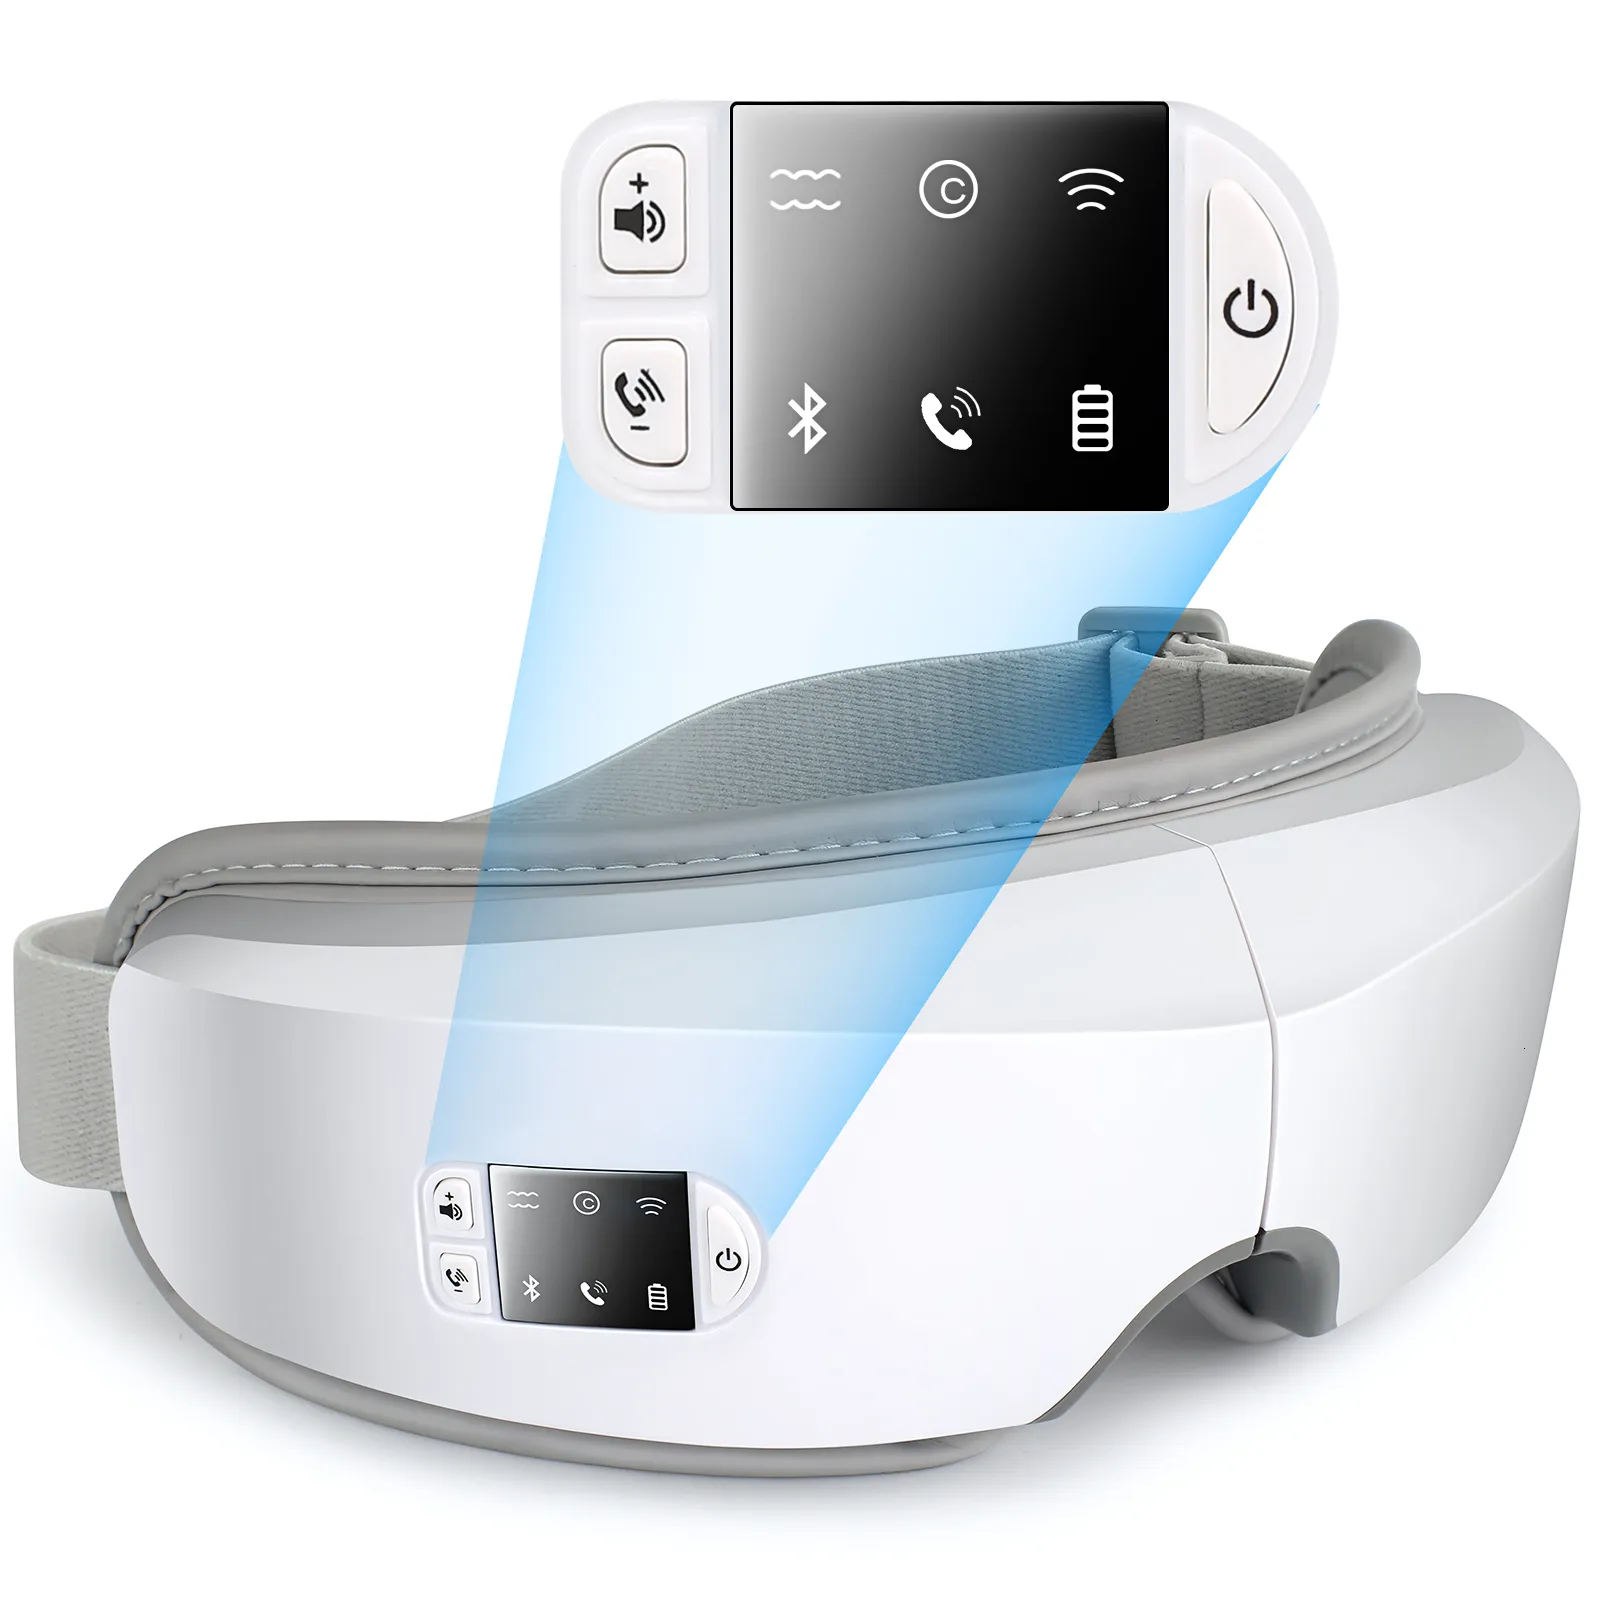 Augenmassagegerät, intelligent, beheizter Luftdruck, Vibration, Bluetooth, lindert Müdigkeit, Airbag-Massage, Pflege 230718